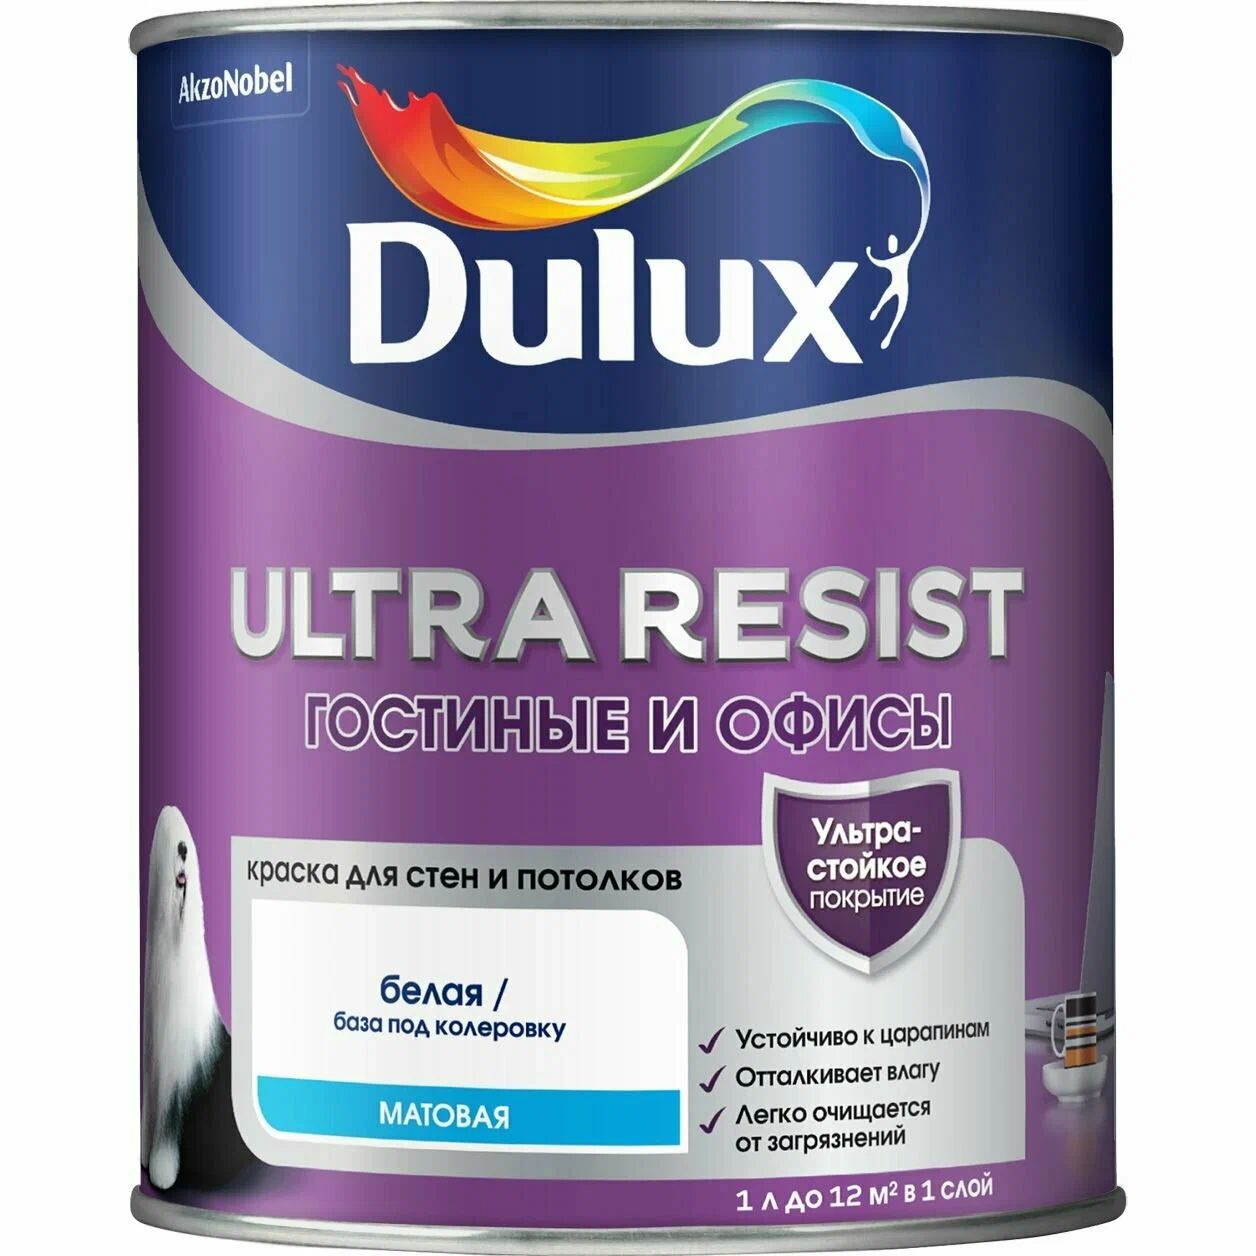 Ультра резист. Dulux ультра резист. Краска Dulux Ultra resist BW моющаяся. Dulux Ultra resist гостиные и офисы. Краска водно-дисперсионная Dulux Ultra resist.